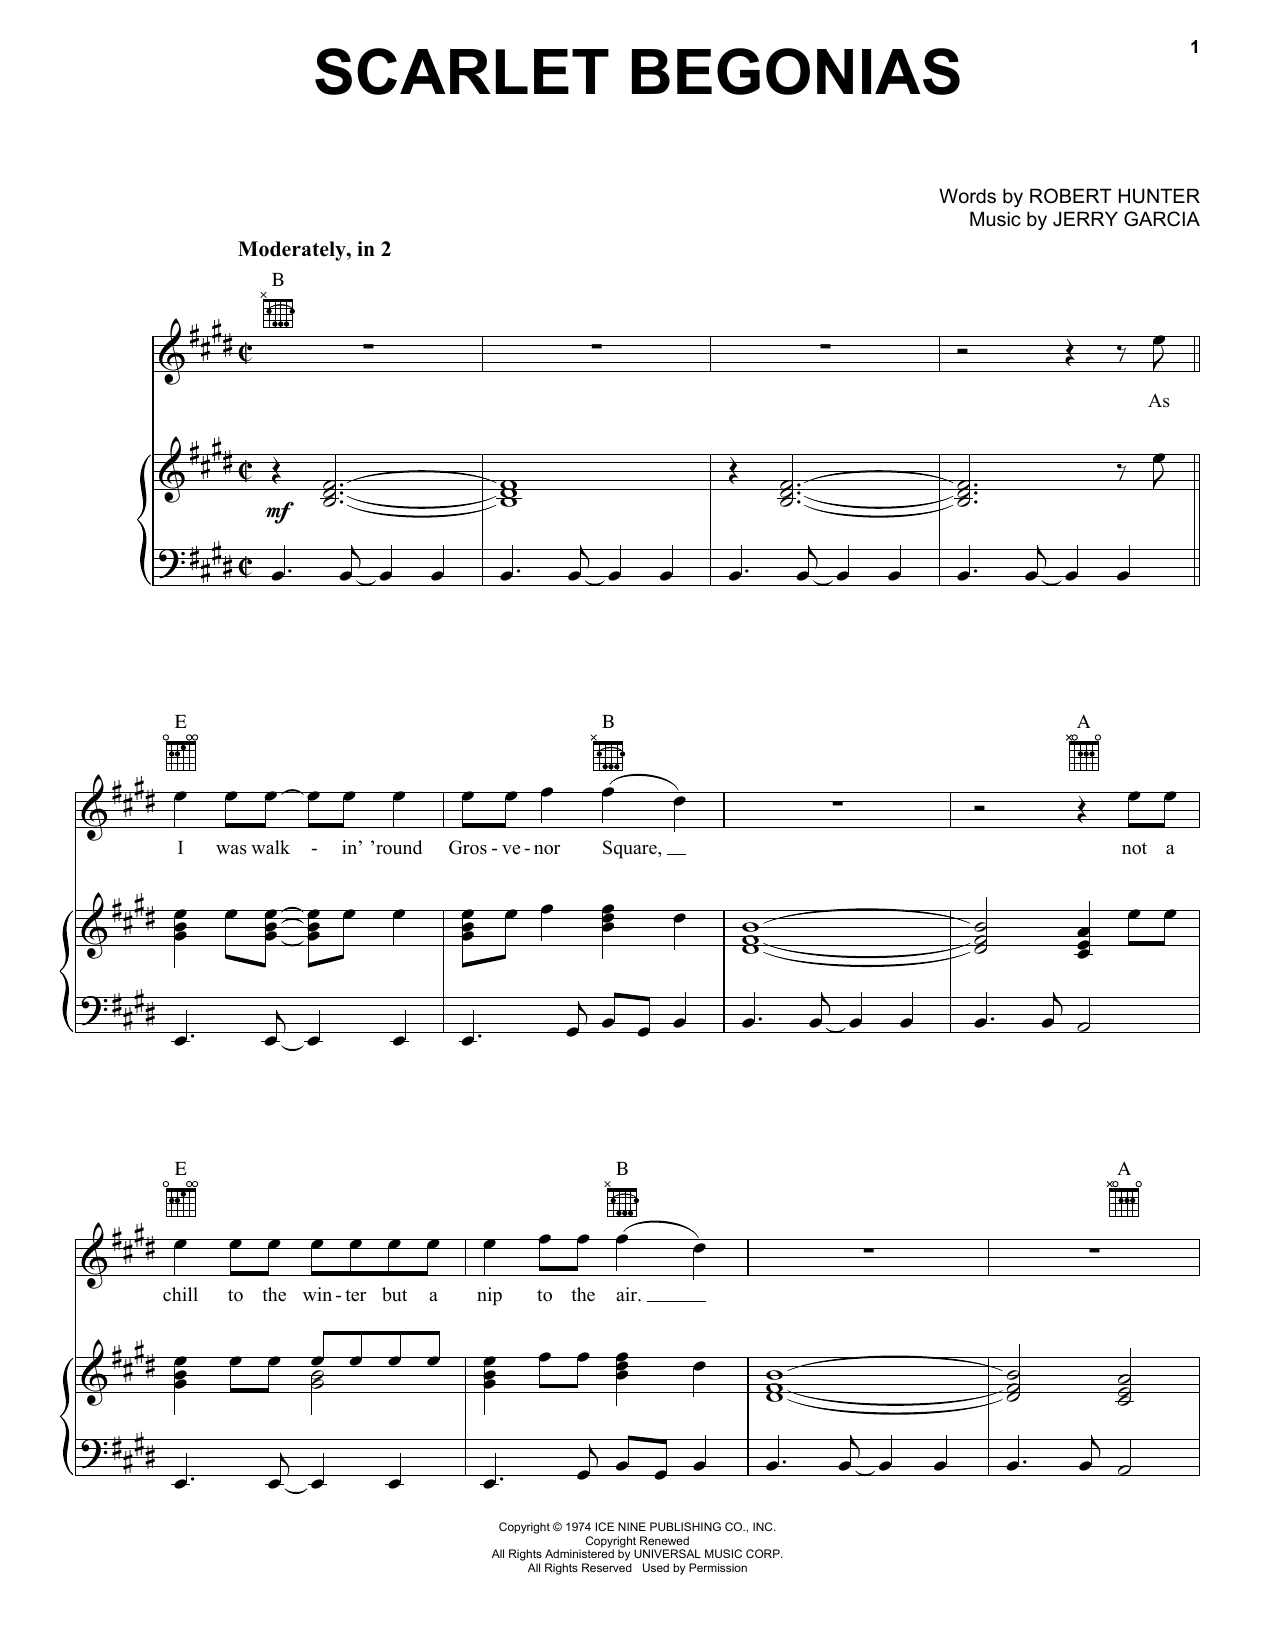 Grateful Dead Scarlet Begonias Sheet Music Notes & Chords for Ukulele - Download or Print PDF